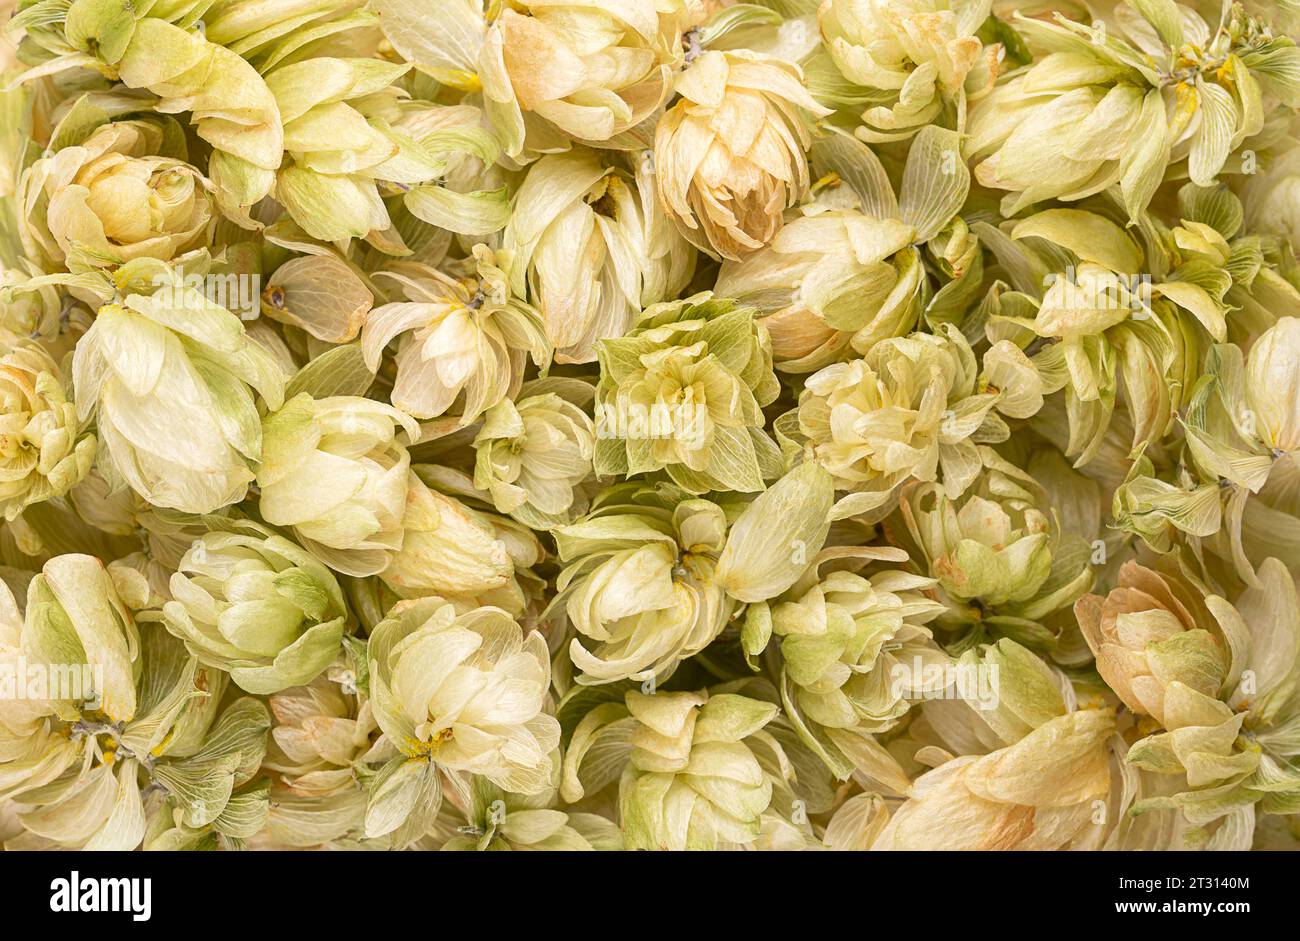 Houblon, fleurs de houblon séchées, fond d'en haut. Humulus lupulus, membre de la famille des Cannabaceae, utilisé comme amère, arôme et agent de stabilité. Banque D'Images